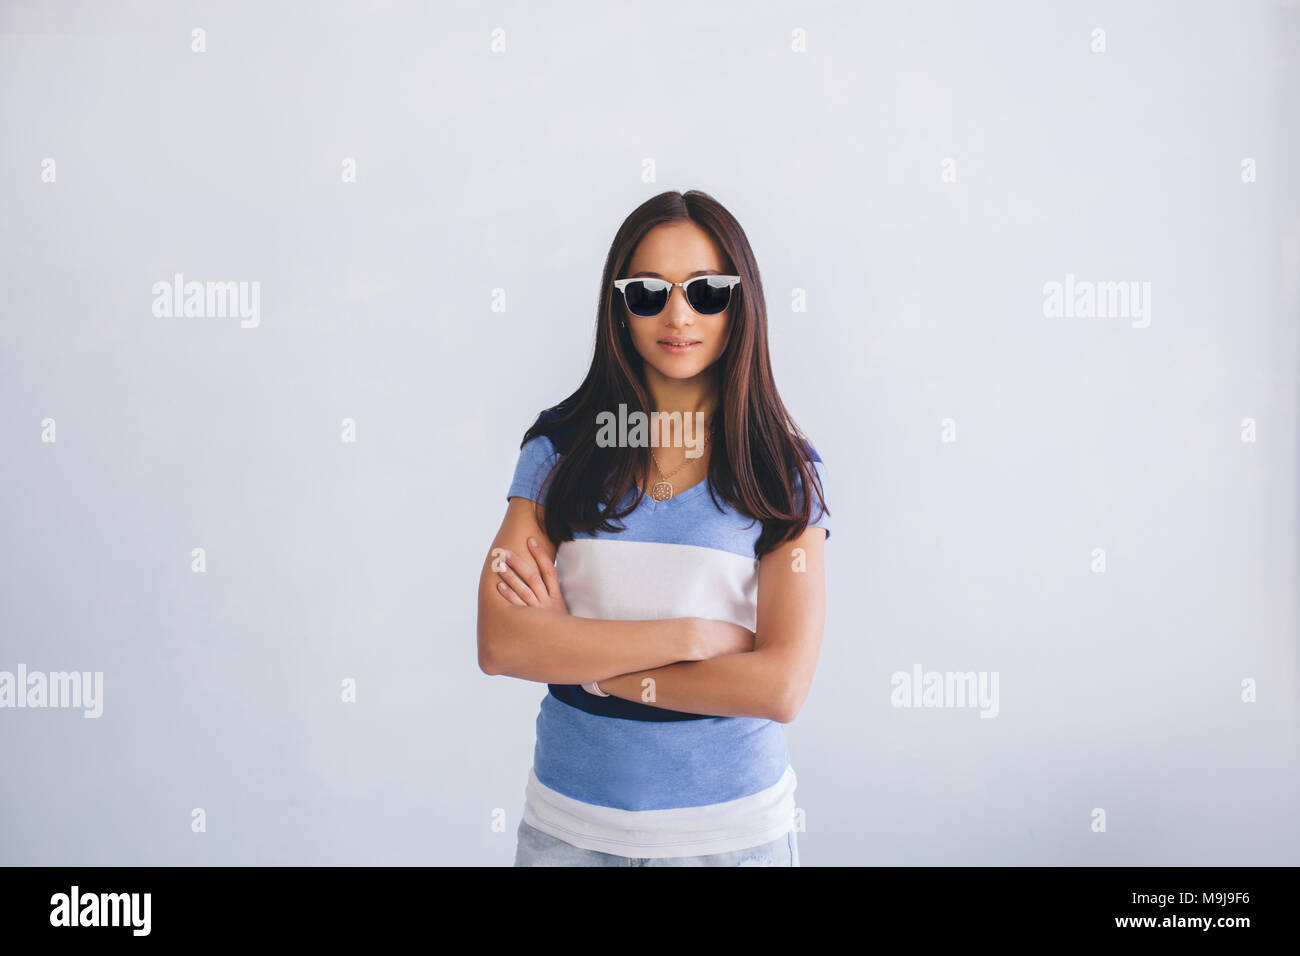 pretty woman wearing sunglasses Stock Photo